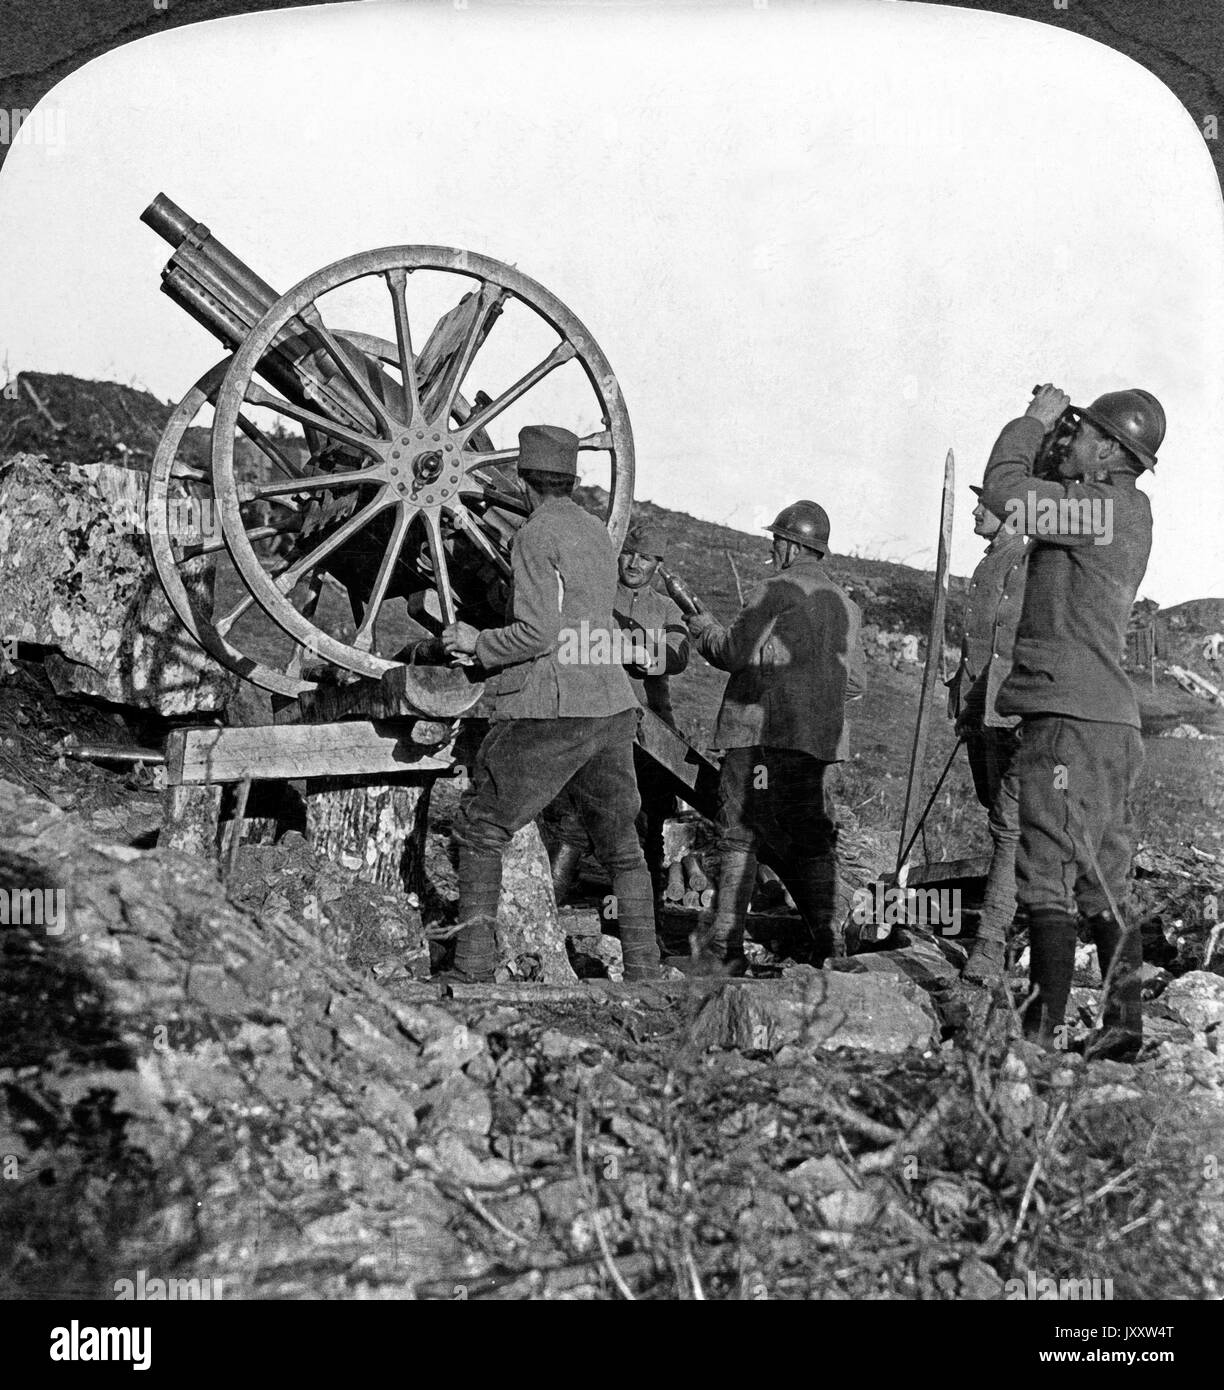 Serbische Soldaten an einer Flugabwehrkanone, 1910er Jahre. Serbians operating an anti aircraft gun on the Balkn front, 1910s. Stock Photo